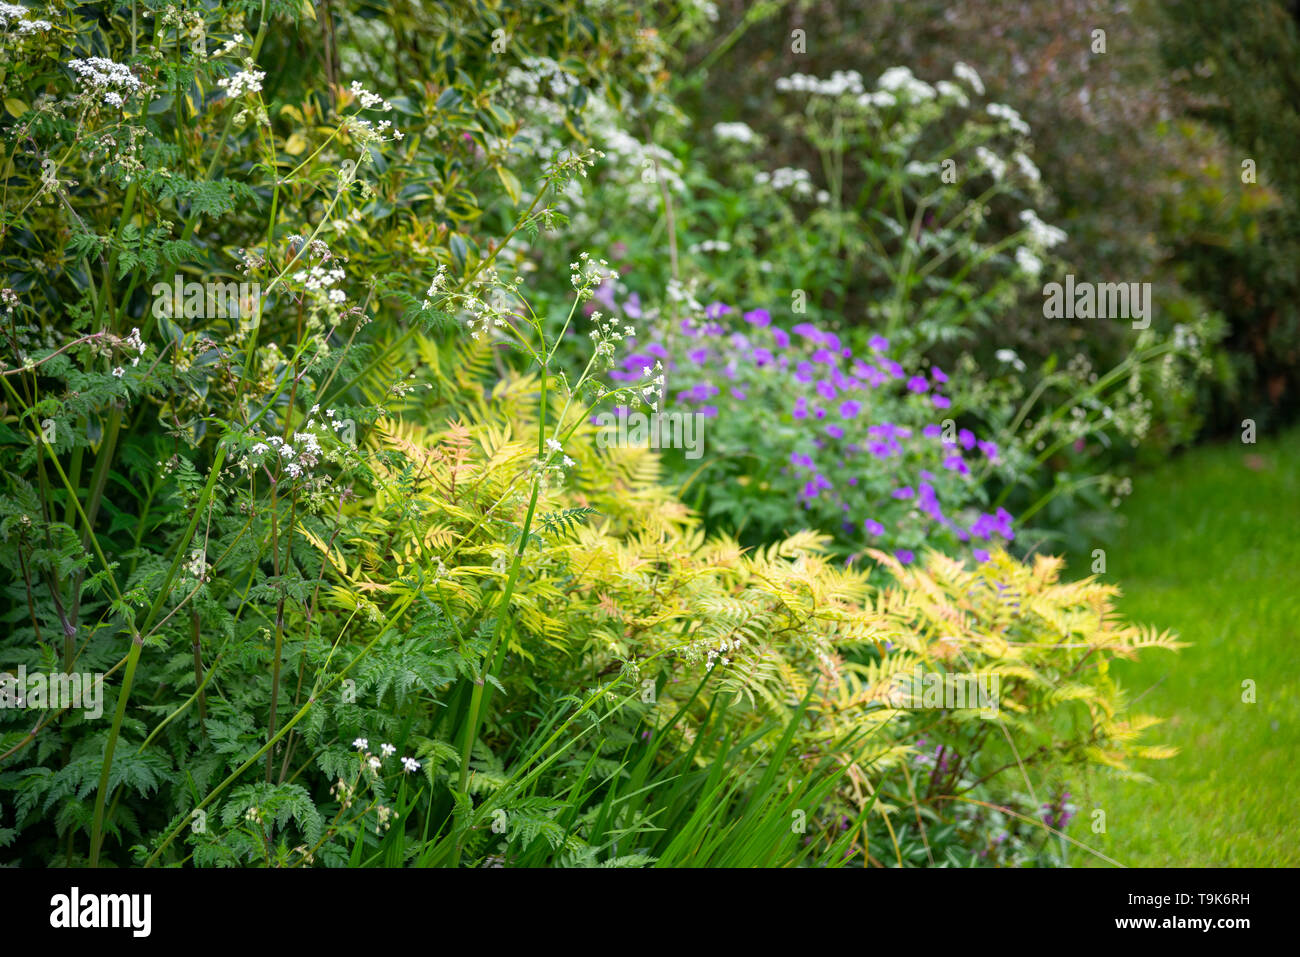 English Chalet jardin à la mi-mai. Une abondance de la plantation d'arbustes et des vivaces. Banque D'Images